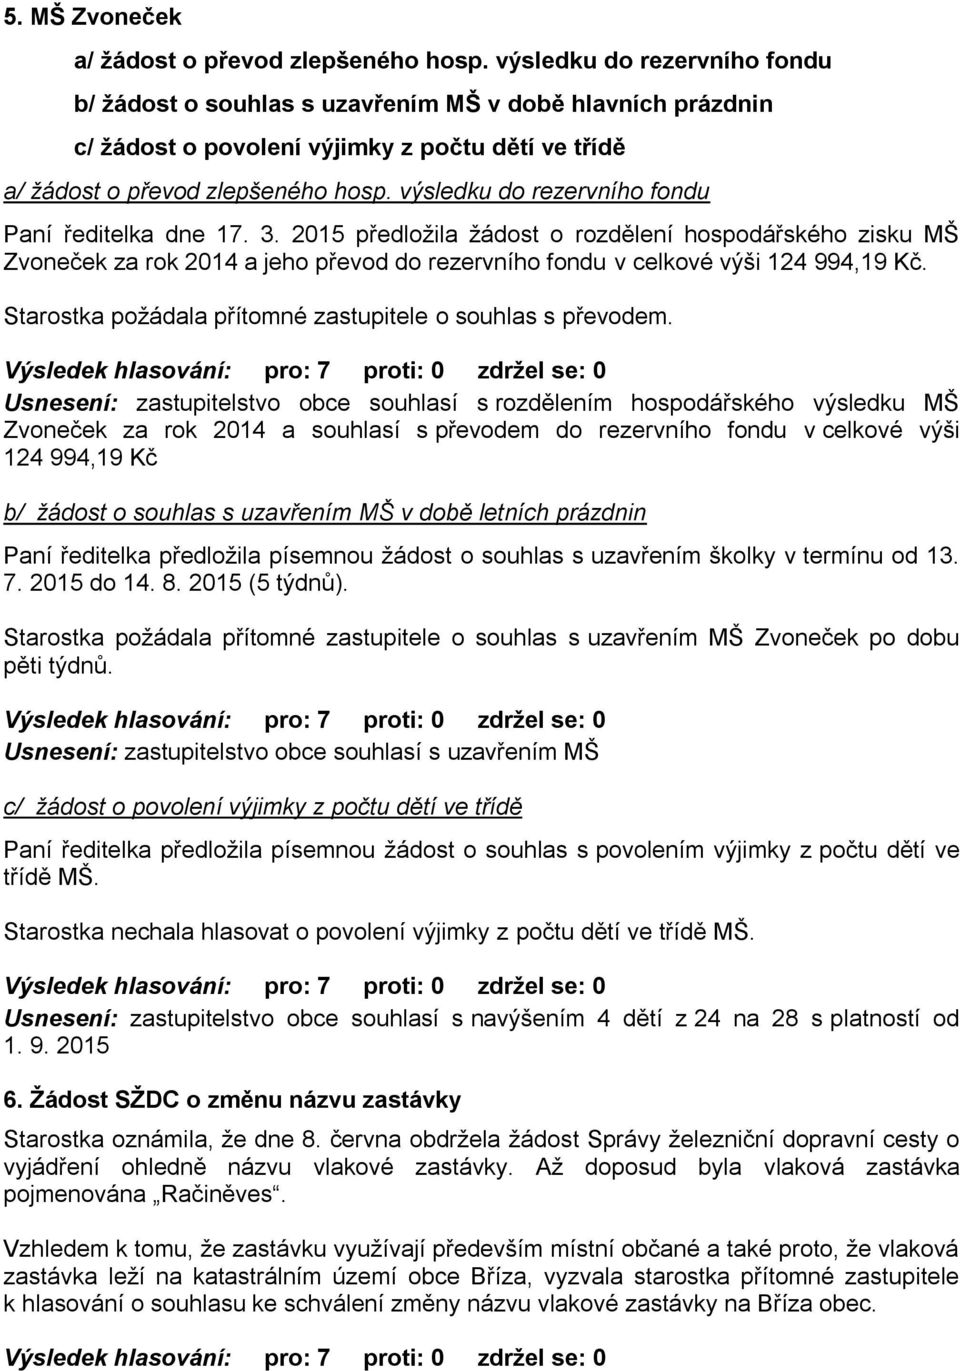 výsledku do rezervního fondu Paní ředitelka dne 17. 3. 2015 předloţila ţádost o rozdělení hospodářského zisku MŠ Zvoneček za rok 2014 a jeho převod do rezervního fondu v celkové výši 124 994,19 Kč.